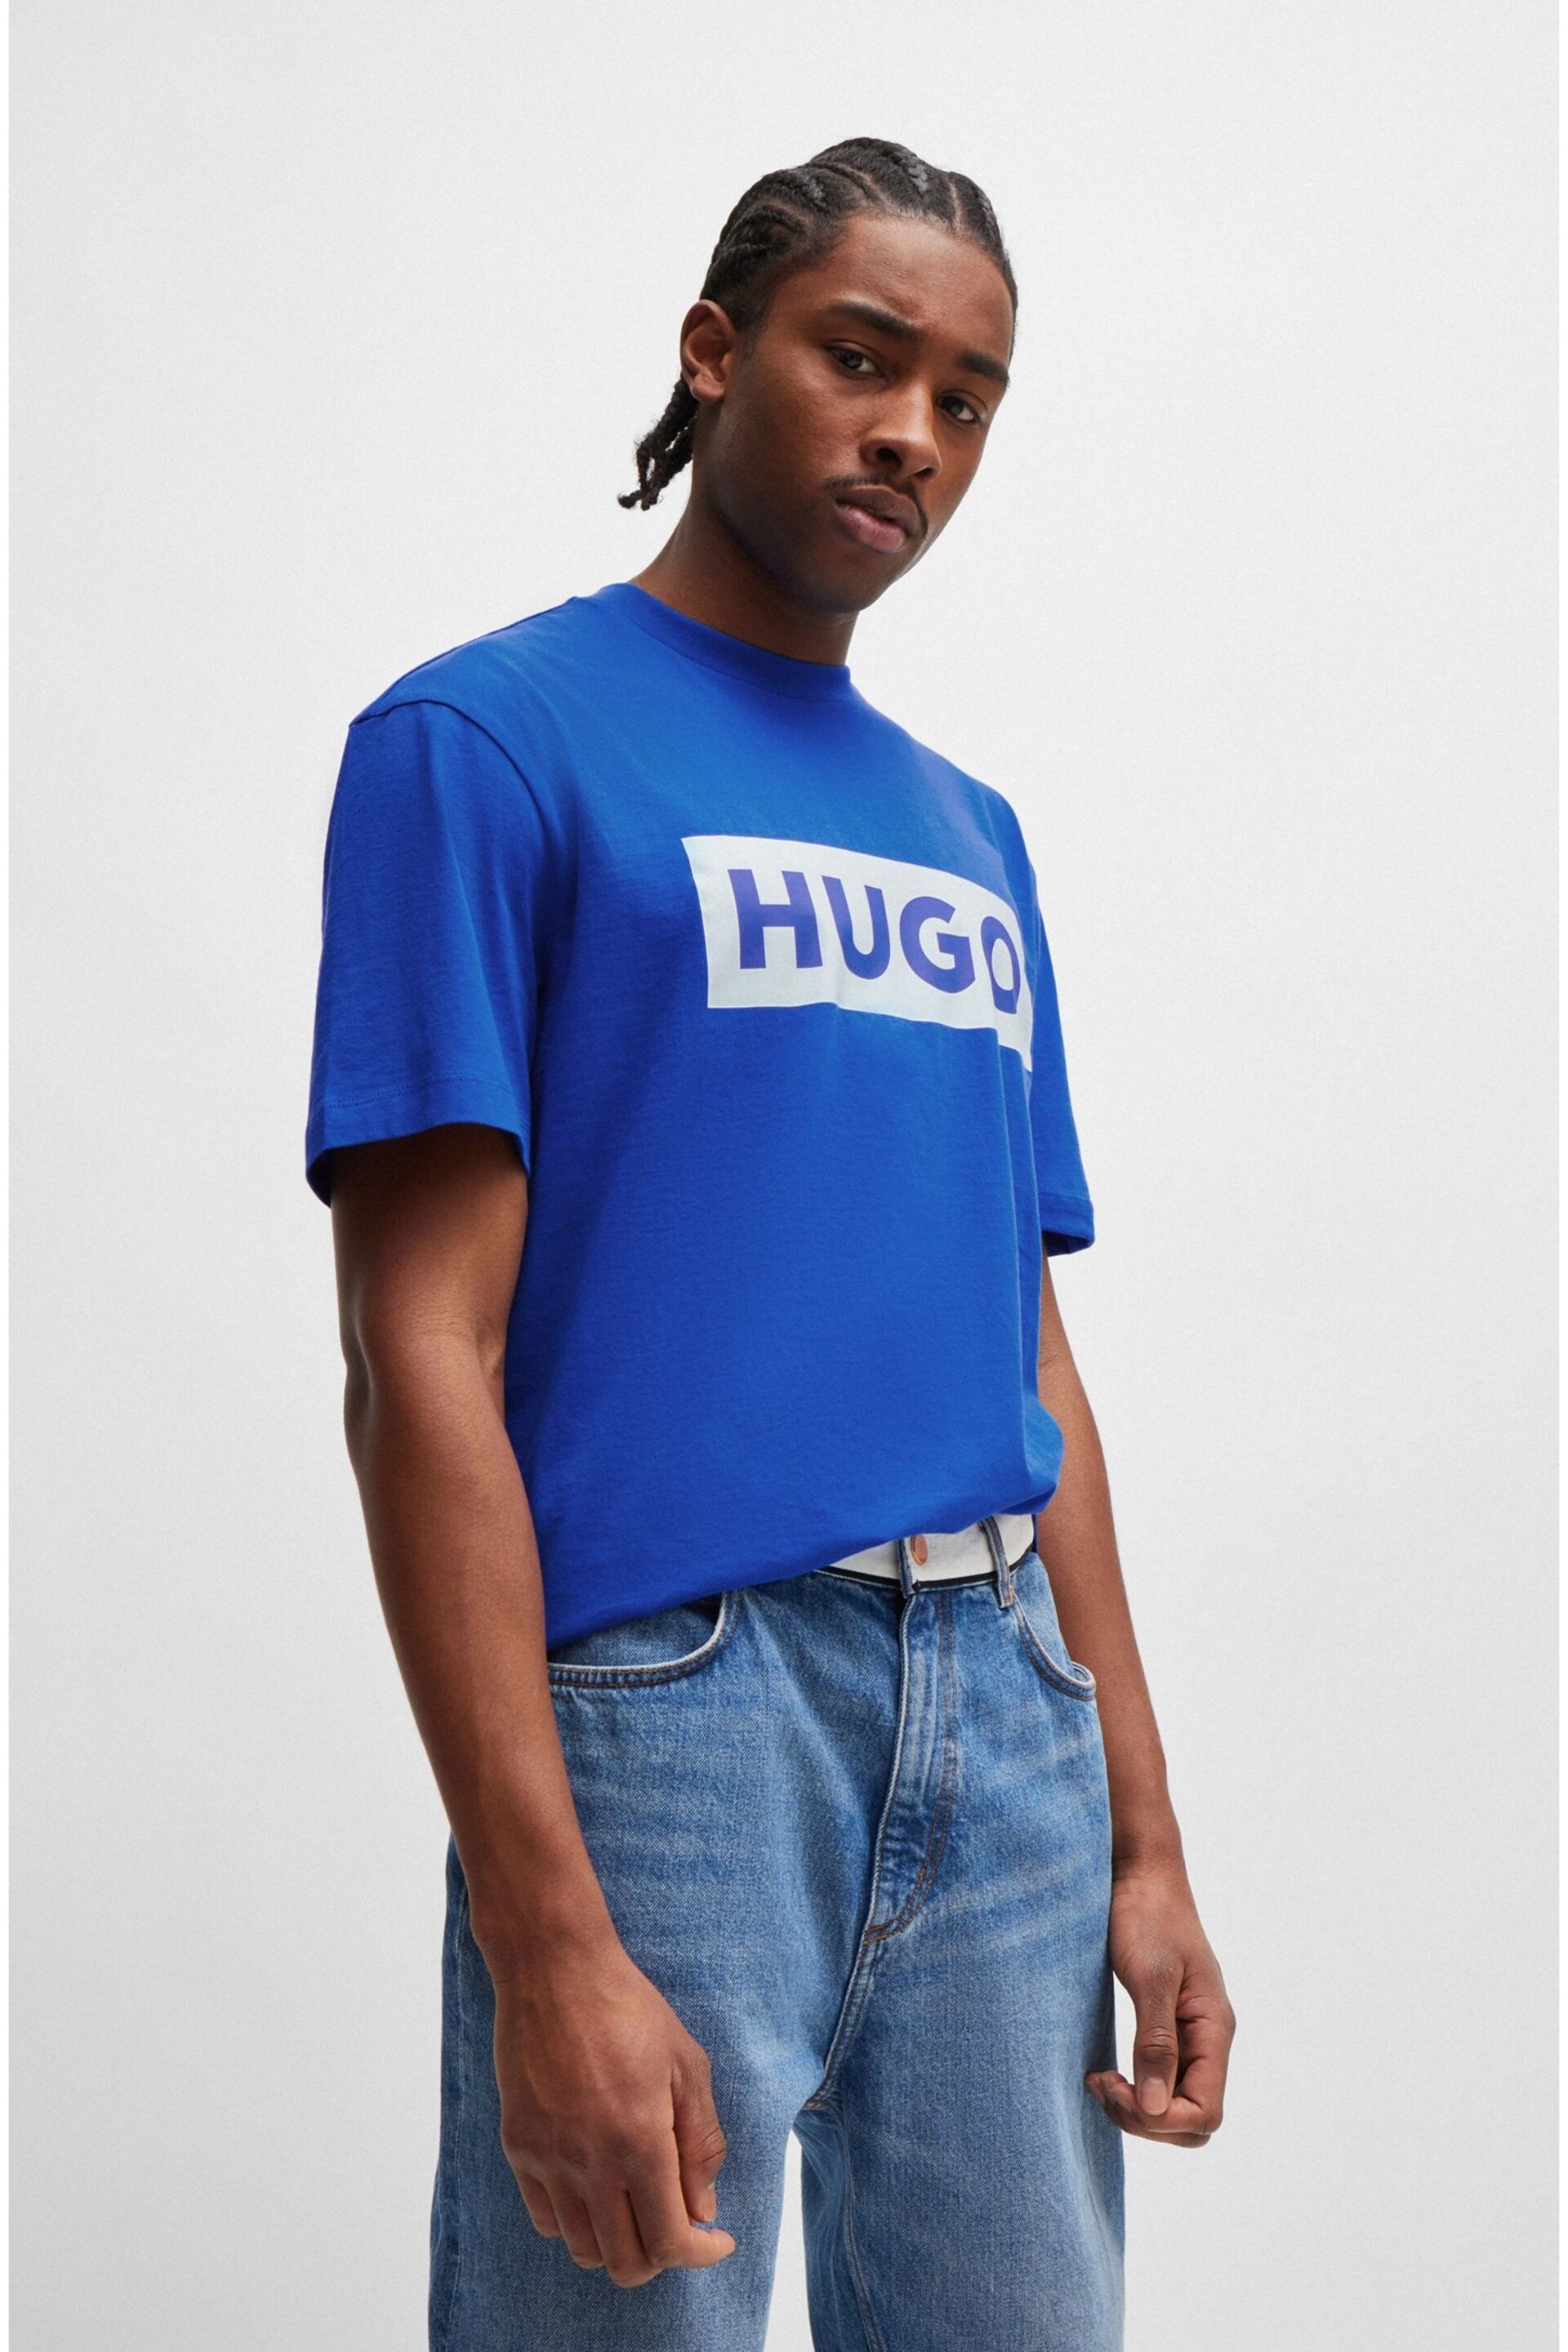 HUGO Blue Large Box Logo T-Shirt - Image 1 of 3